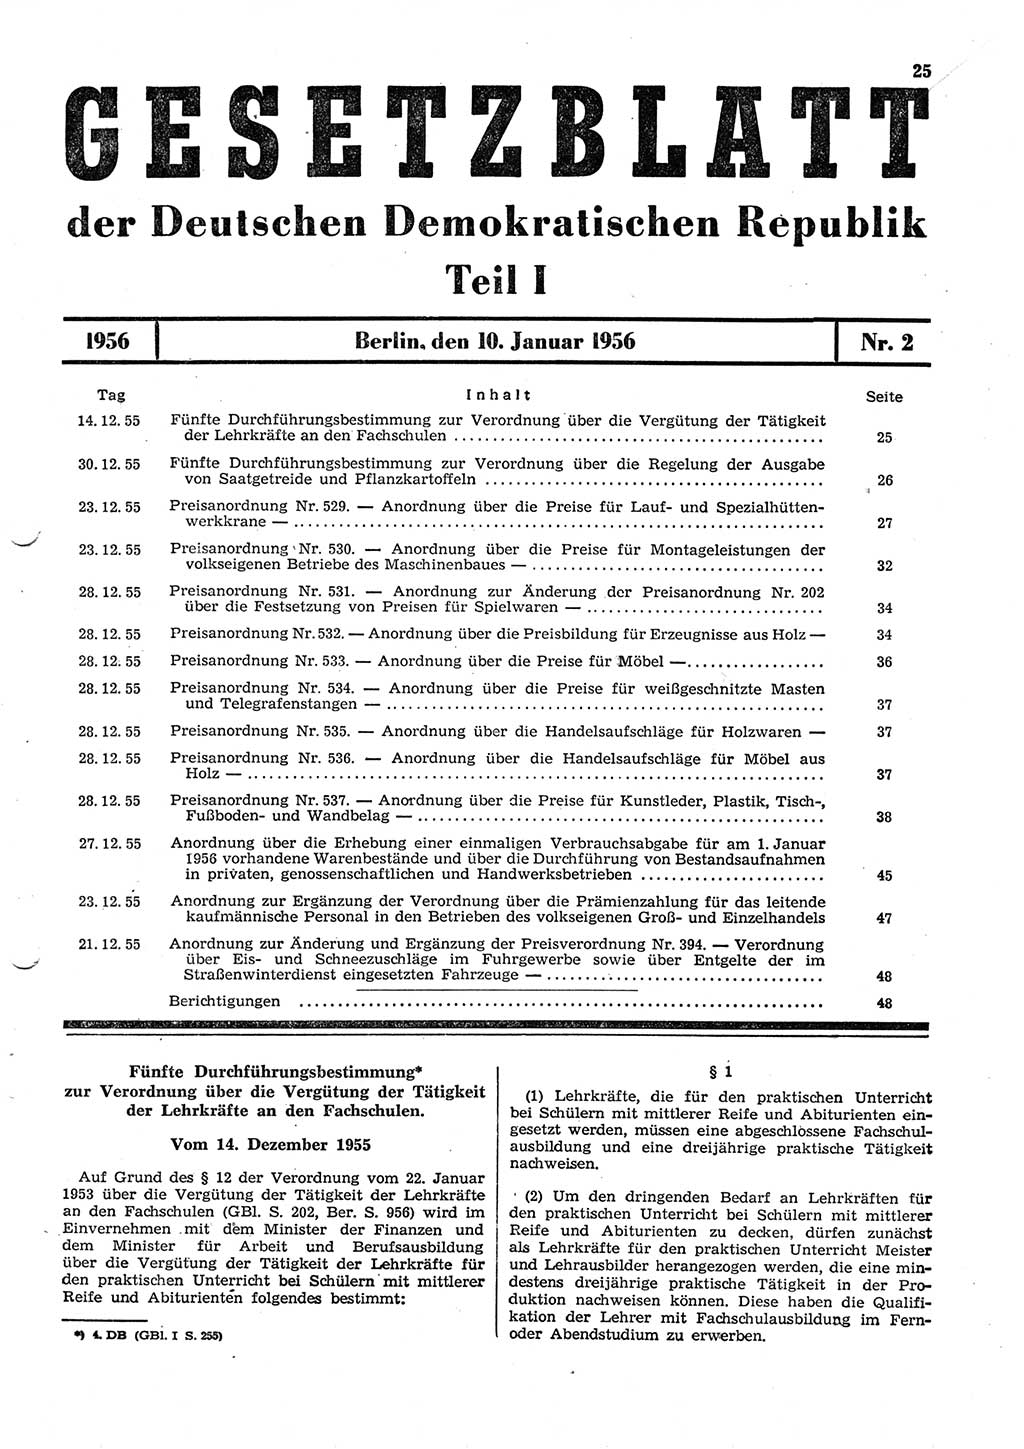 Gesetzblatt (GBl.) der Deutschen Demokratischen Republik (DDR) Teil Ⅰ 1956, Seite 25 (GBl. DDR Ⅰ 1956, S. 25)